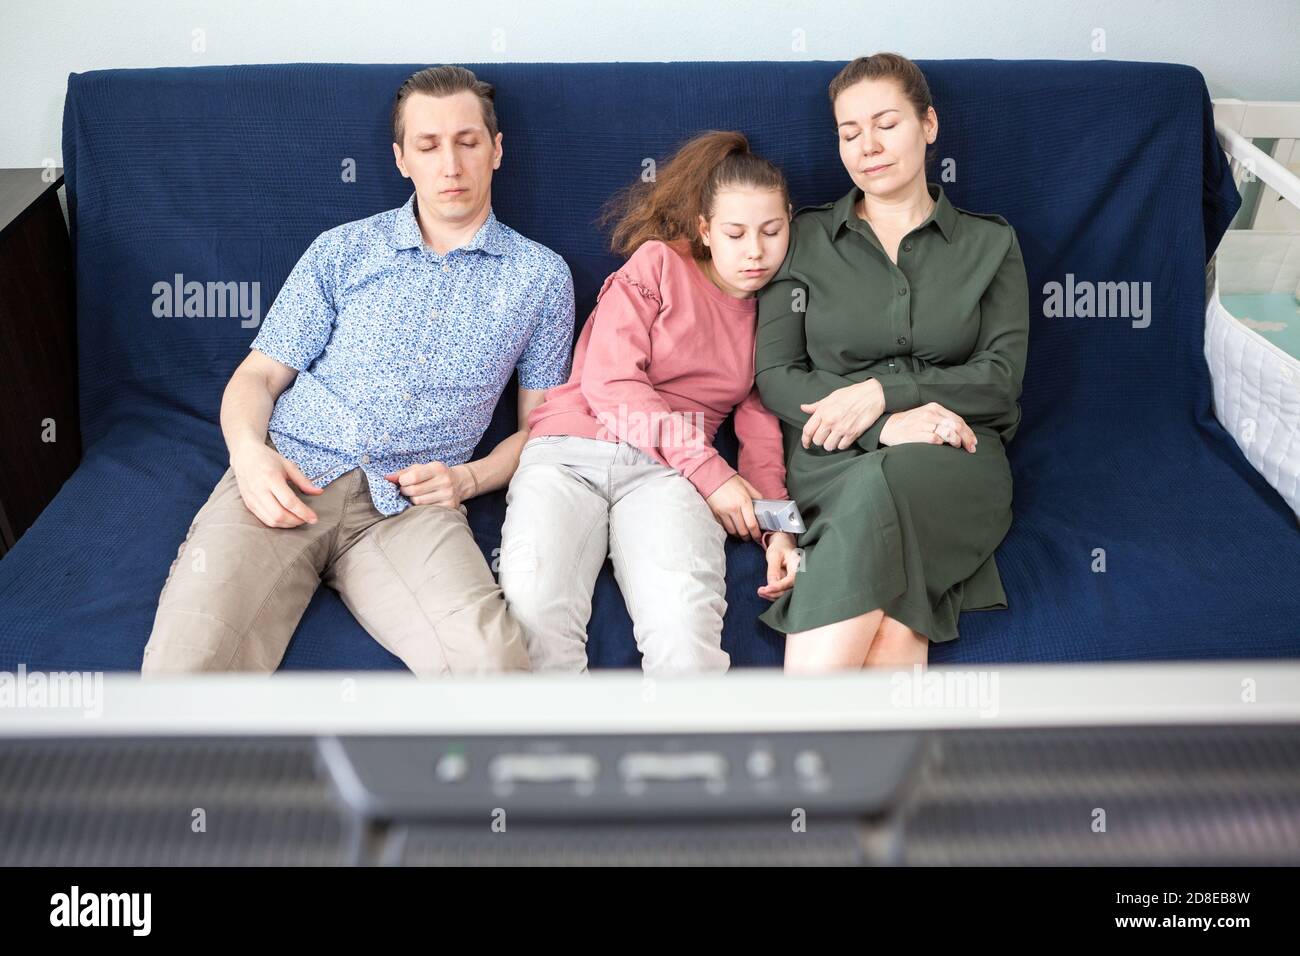 Müde drei Menschen Familie schlafen während Fernsehen im Wohnzimmer, junge Eltern mit ihrer Tochter im Teenageralter Stockfoto